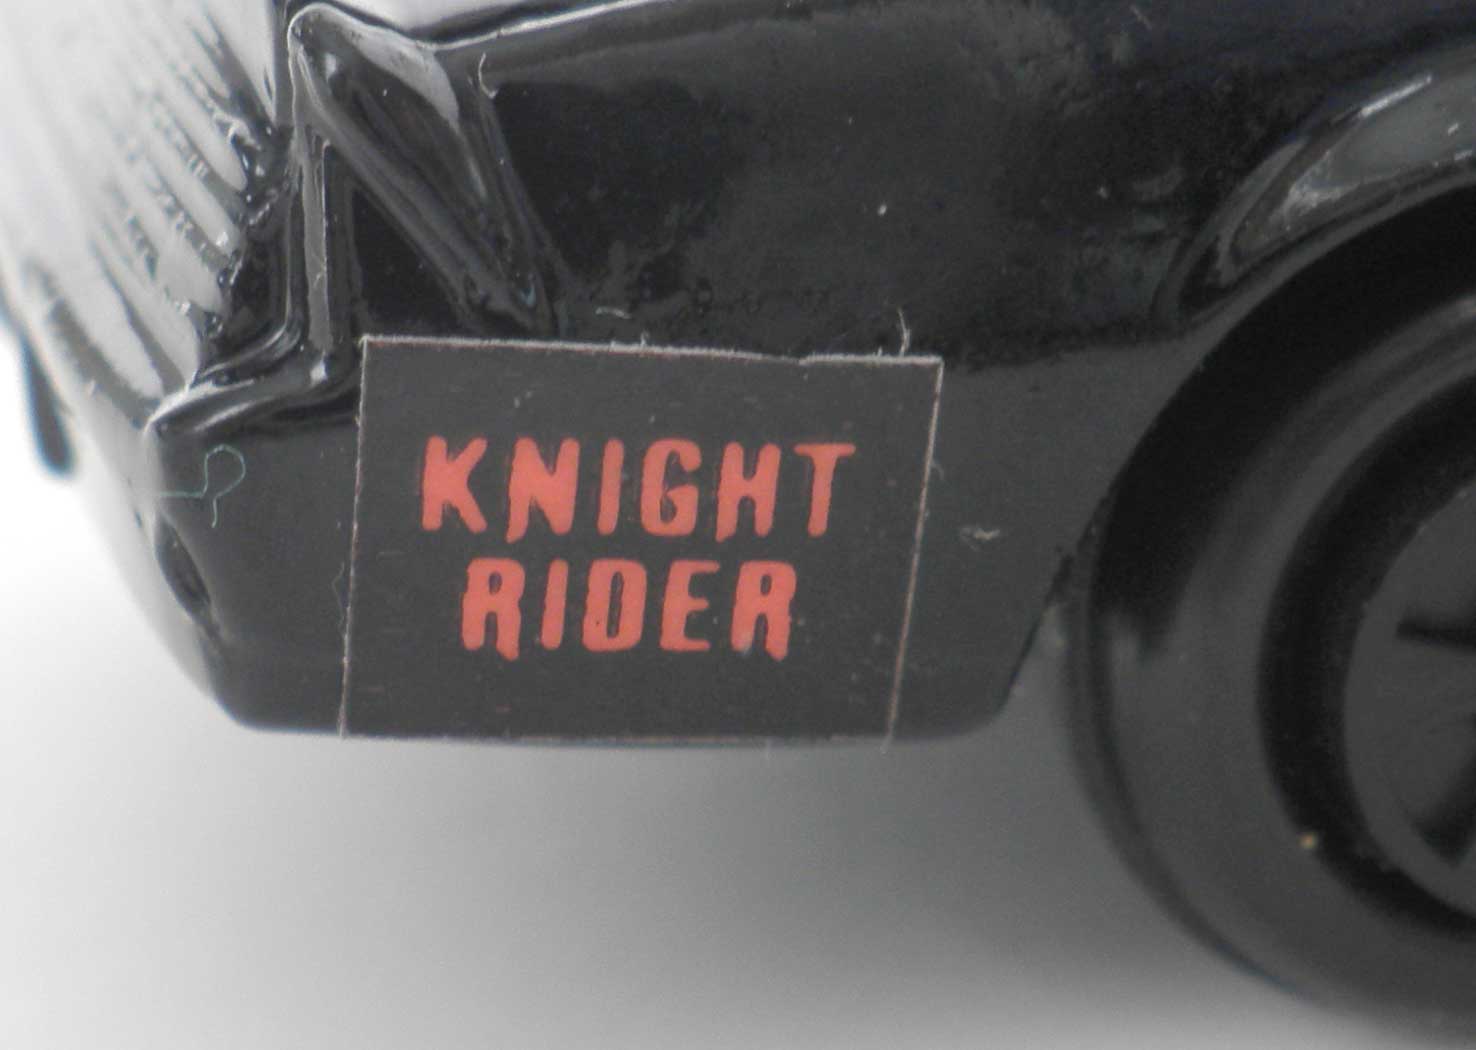 ERTL : Knight Rider (K2000) K.I.T.T. - ech 1/64 (1983)